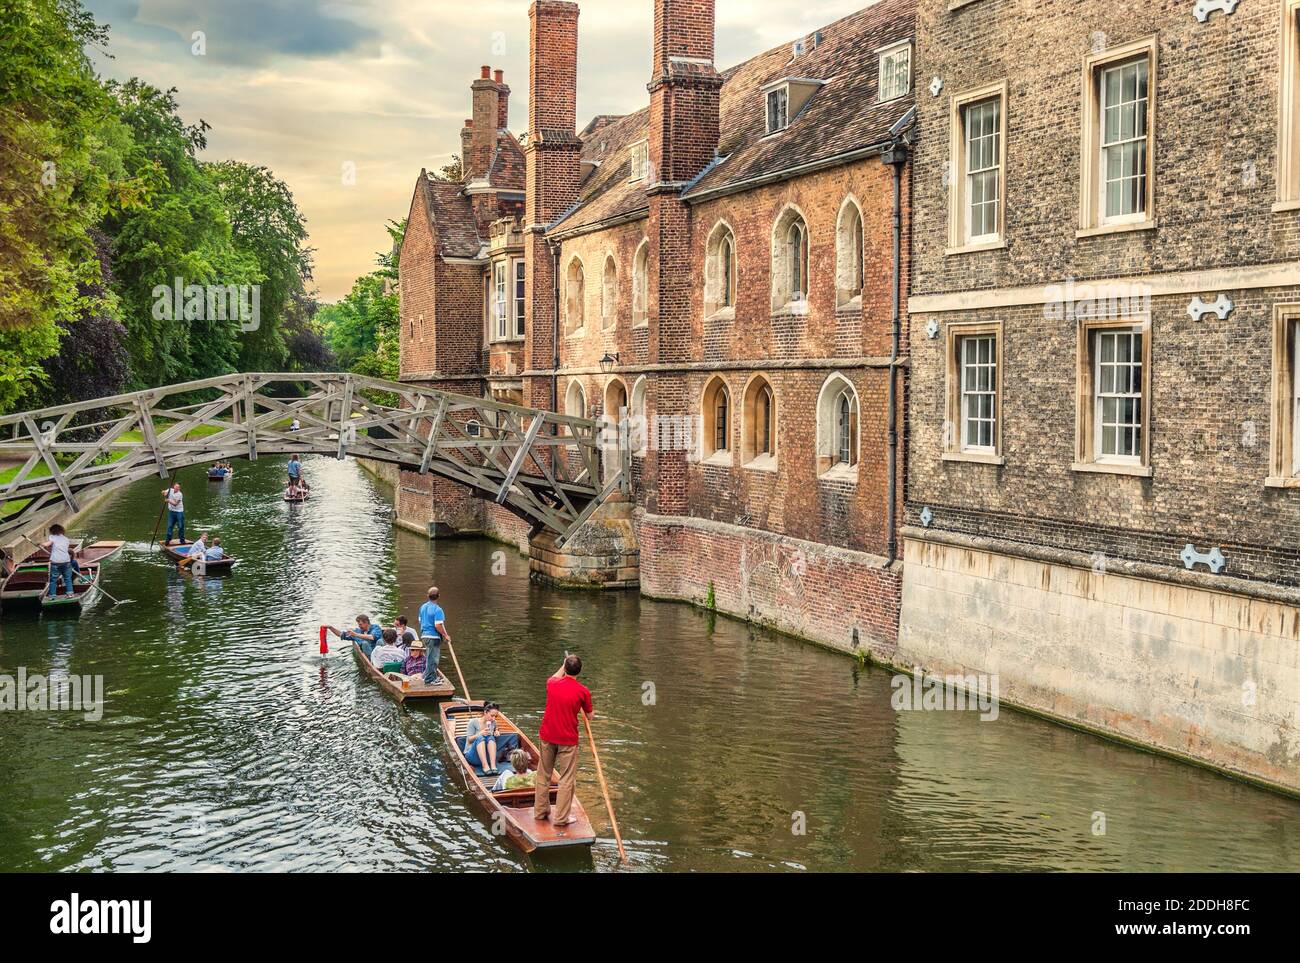 Les étudiants sont en train de punter sur la River Cam de la cité universitaire médiévale de Cambridge, en Angleterre Banque D'Images